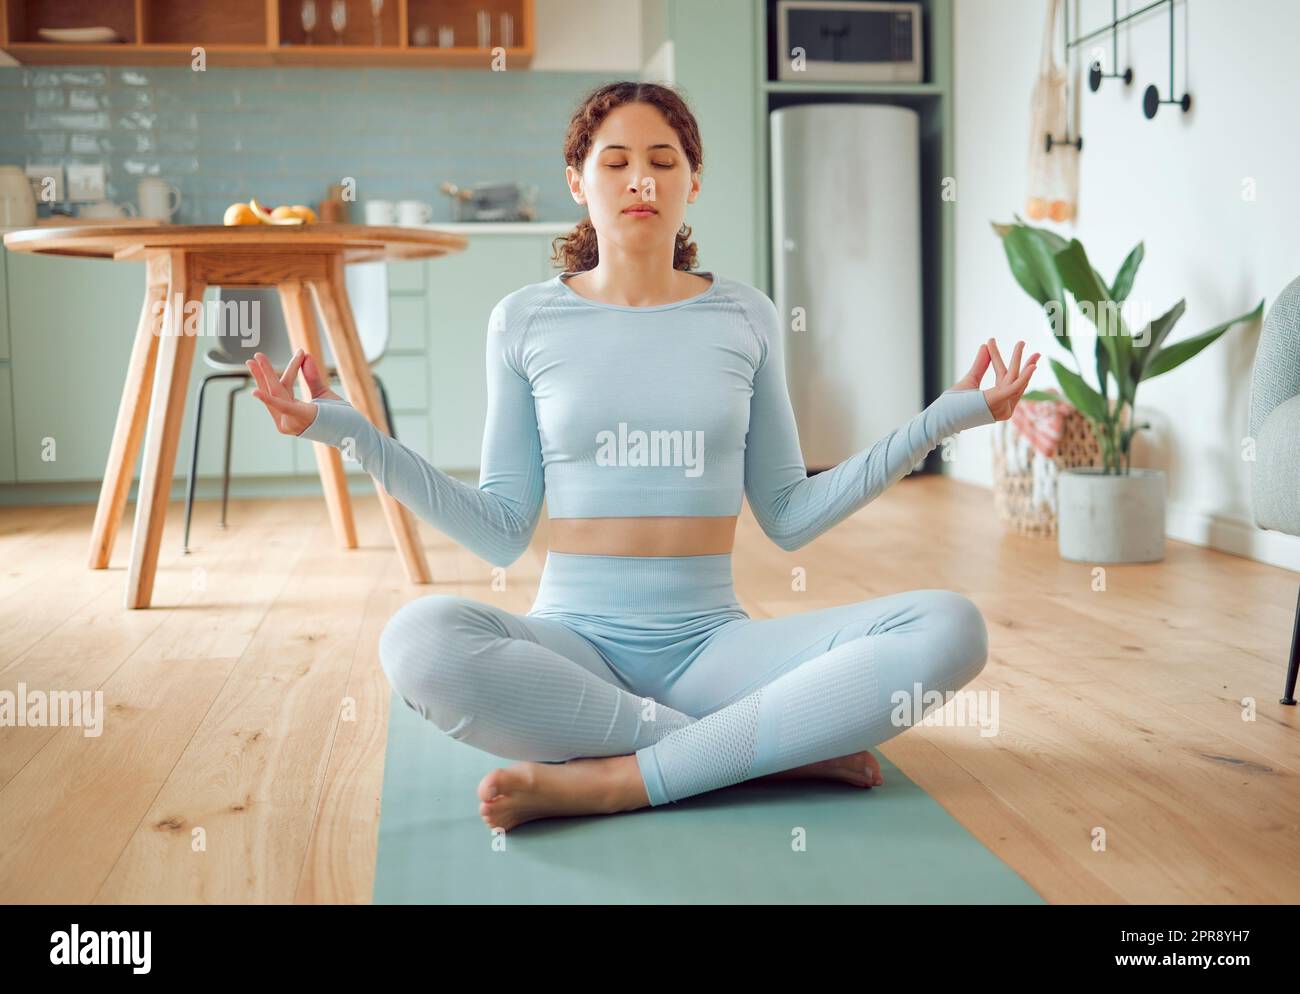 Belle jeune femme de course mixte méditant dans la position d'asana tout en pratiquant le yoga à la maison. Femme hispanique exerçant son corps et son esprit, trouvant la paix intérieure, l'équilibre et la clarté Banque D'Images